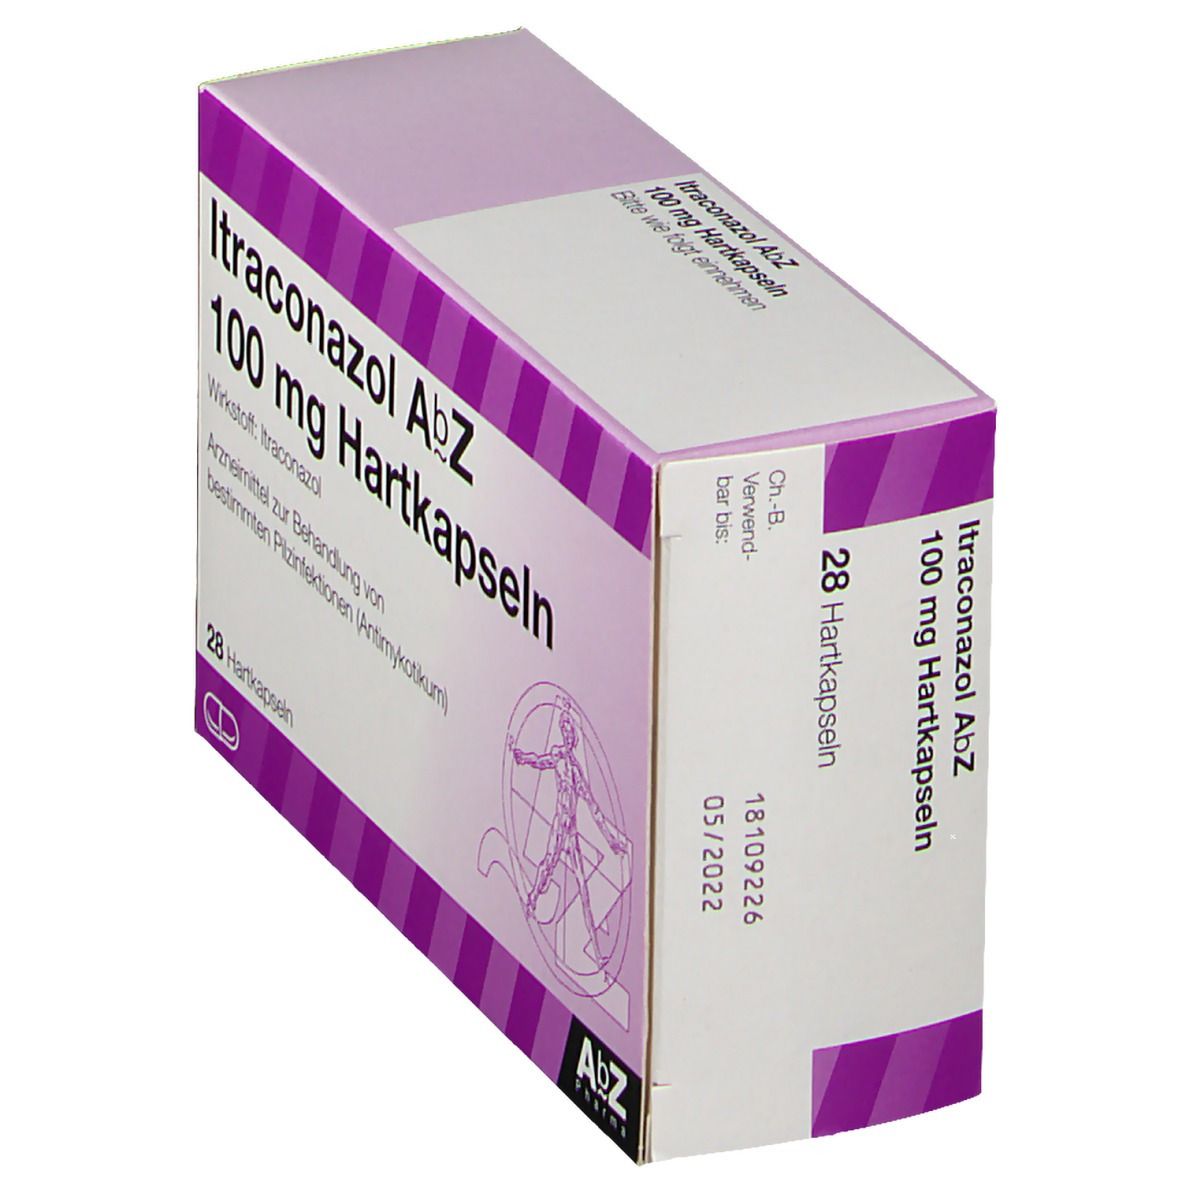 Itraconazol AbZ 100 mg